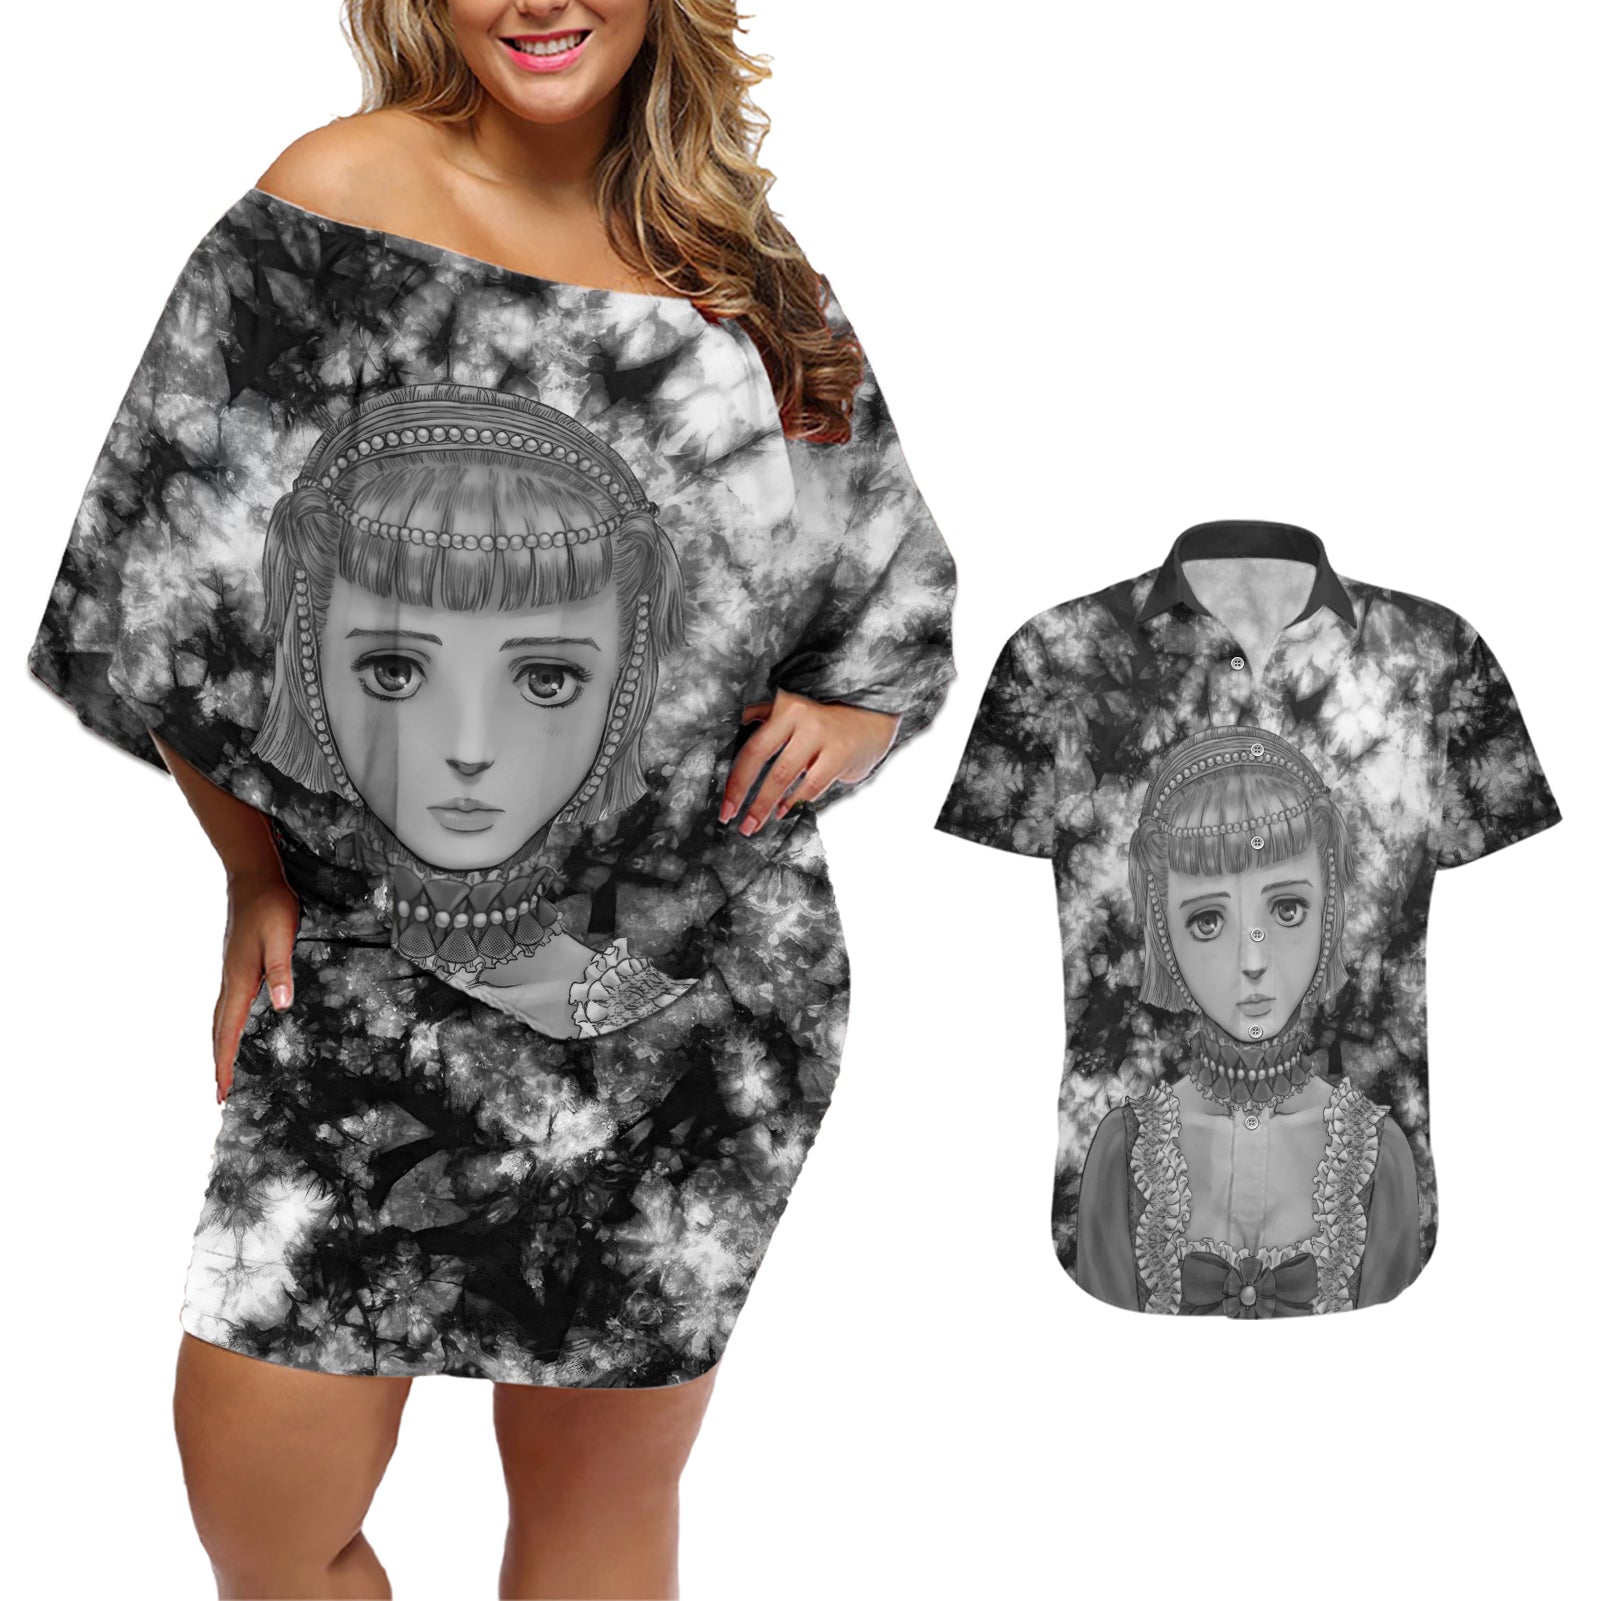 Farnese de Vandimion Berserk Couples Matching Off Shoulder Short Dress and Hawaiian Shirt Grunge Style